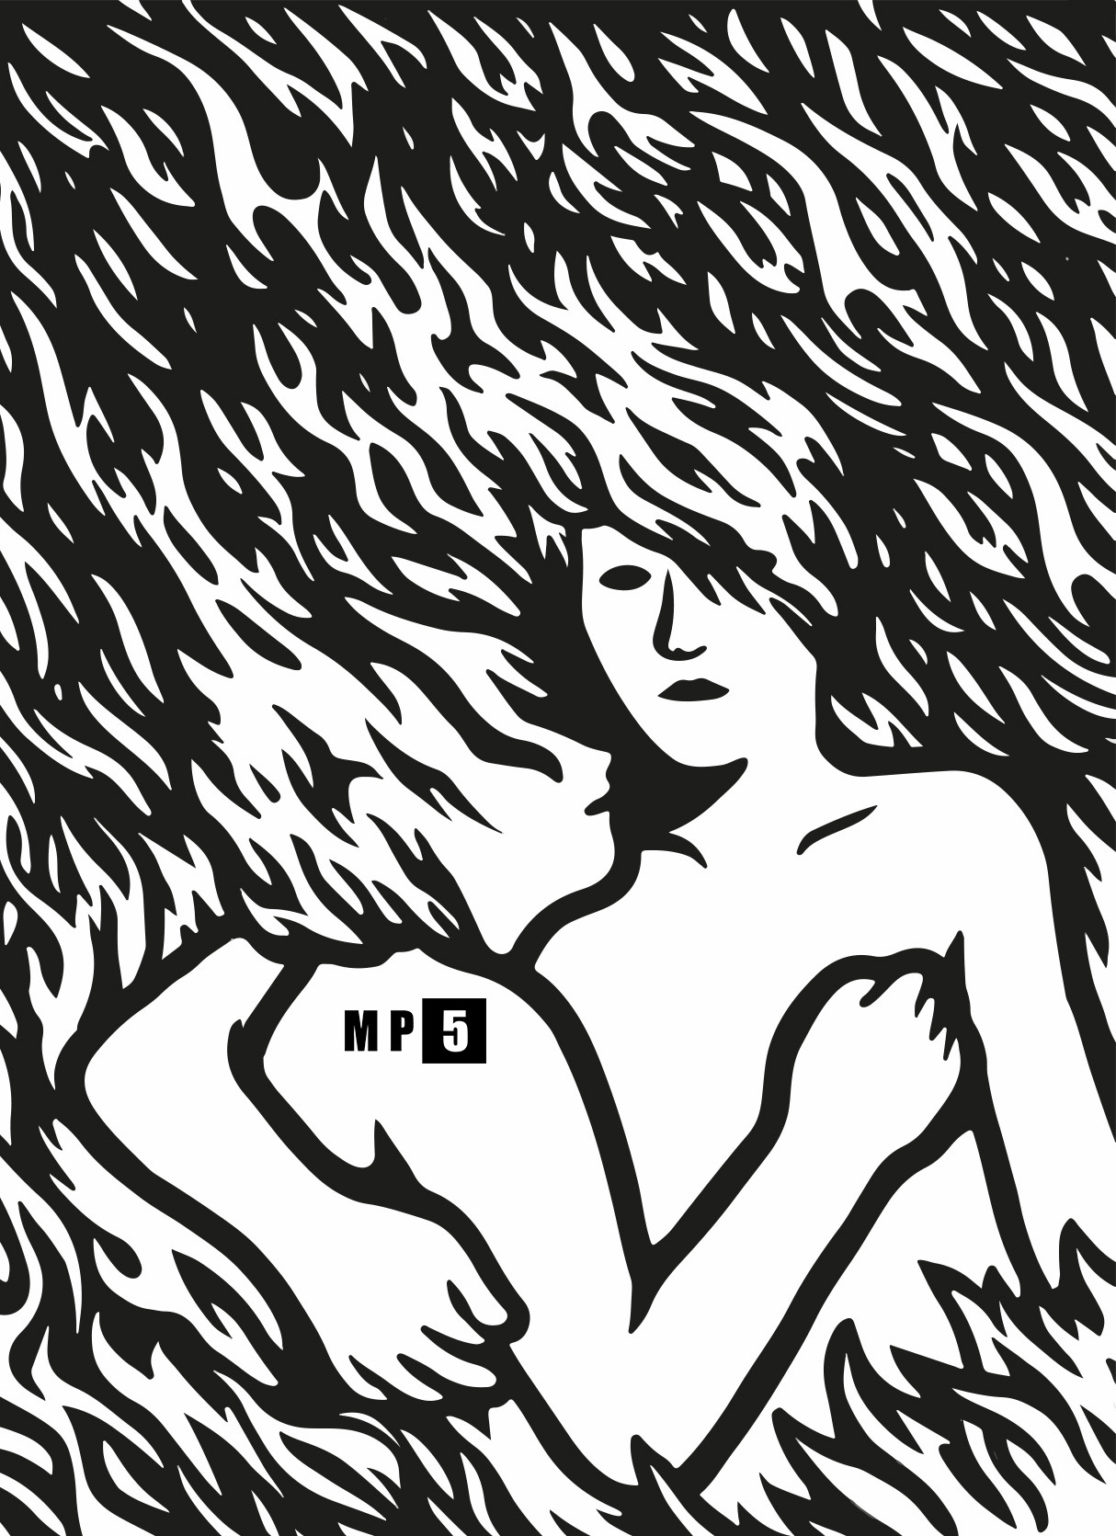 Visuel saison 2022-2023 intitulé Together, de l'artiste MP5, couple enlacé dans le feu